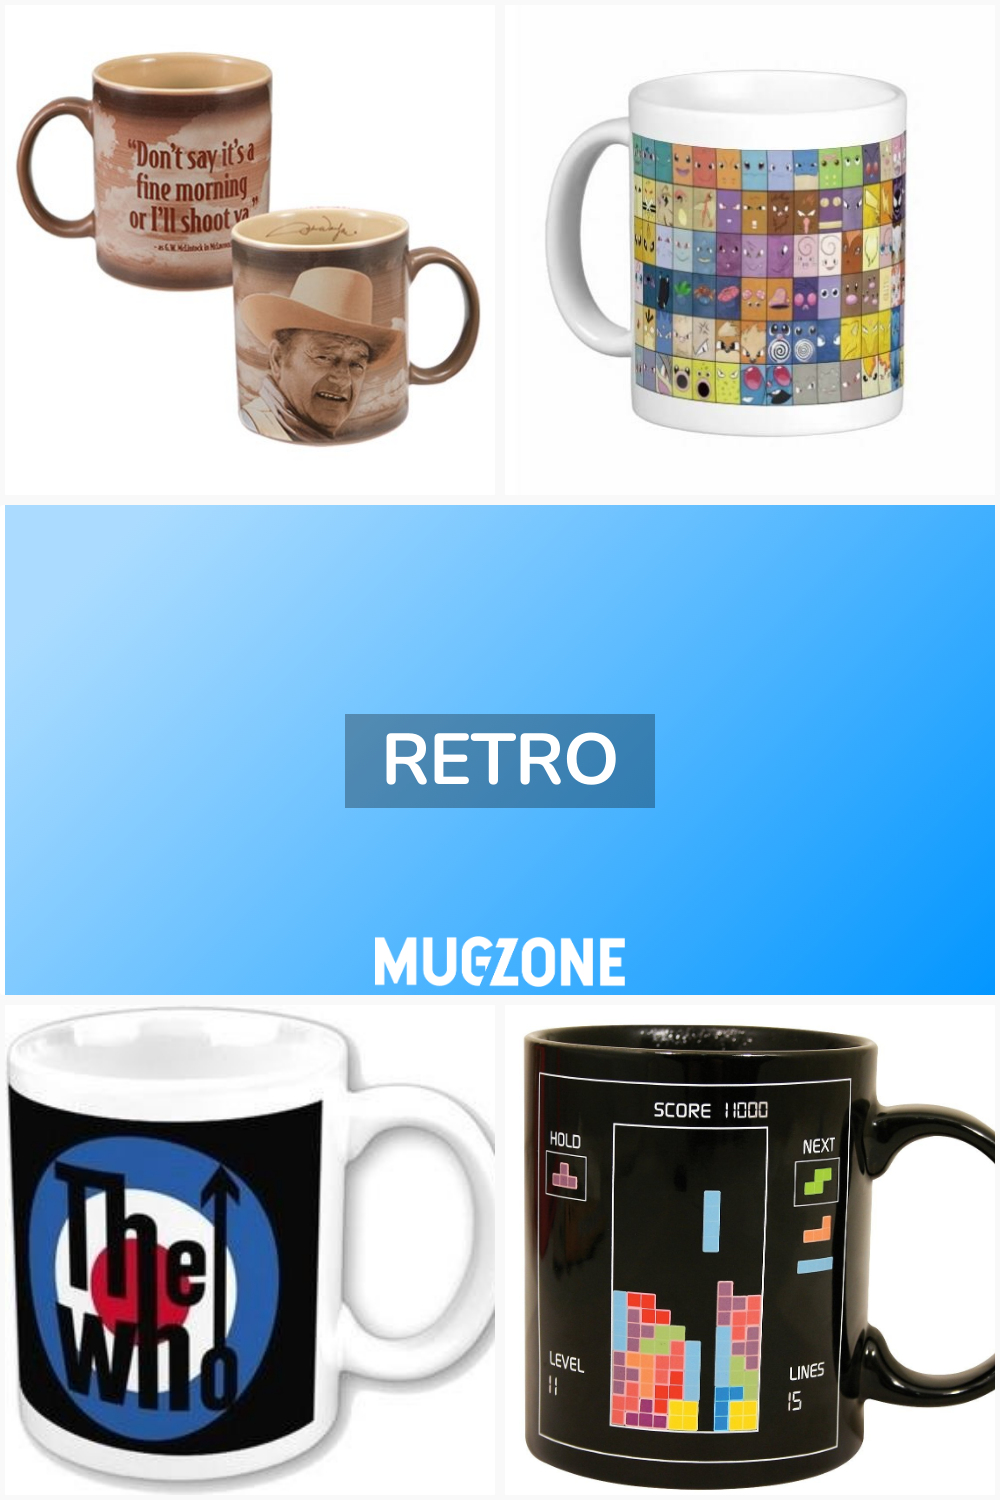 retro // Mug Zone